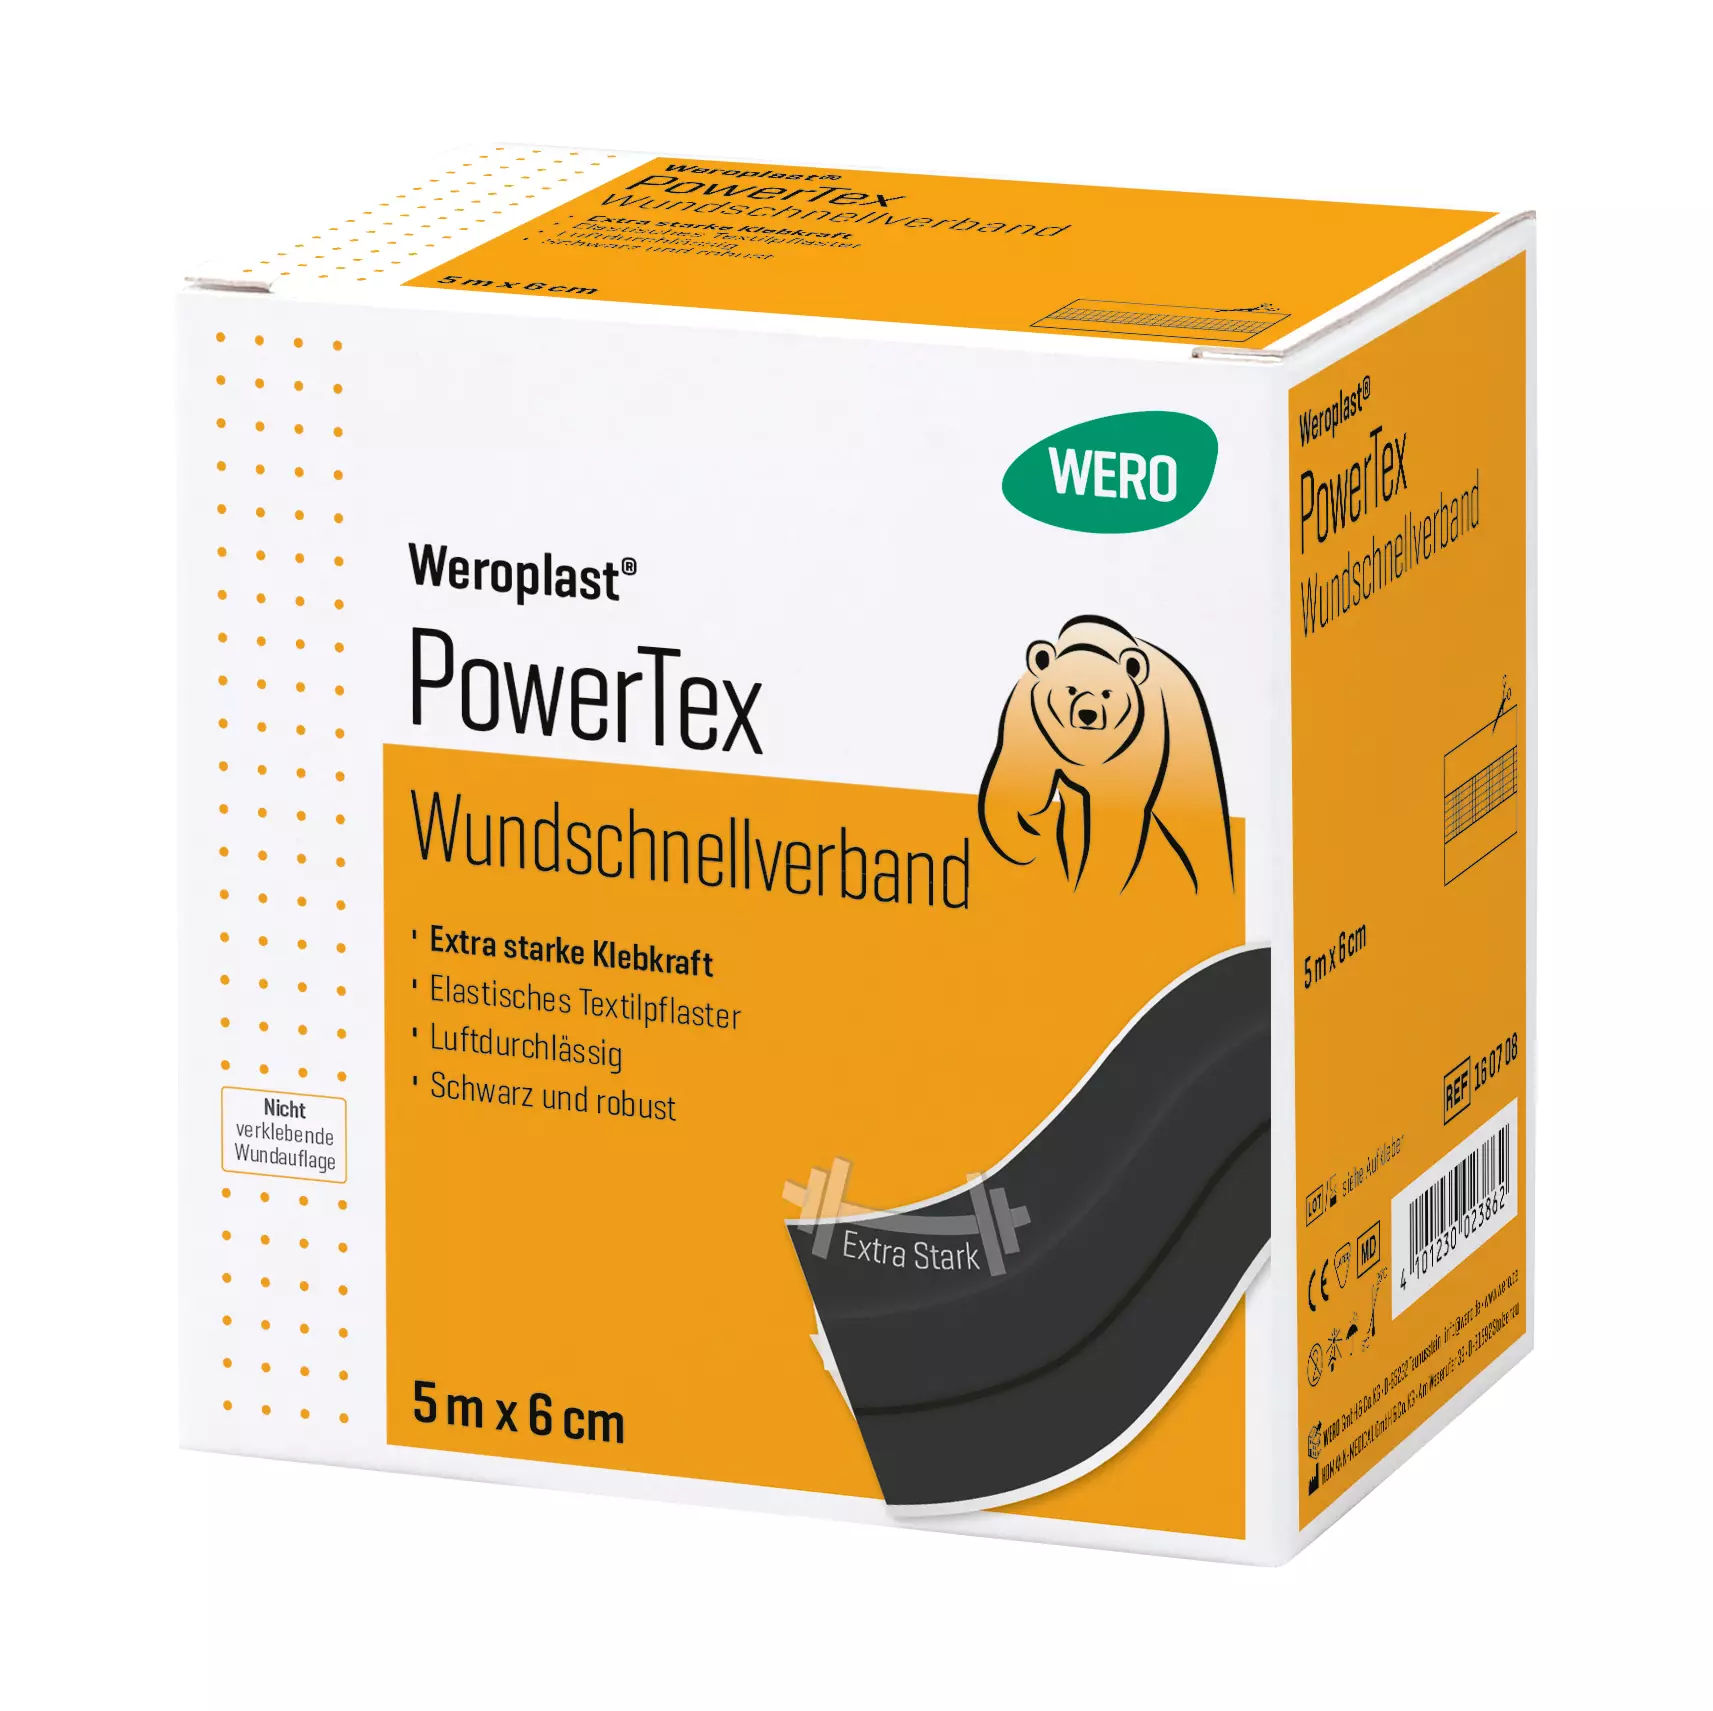 Wound dressing Weroplast® PowerTex - 6 cm, 5 m